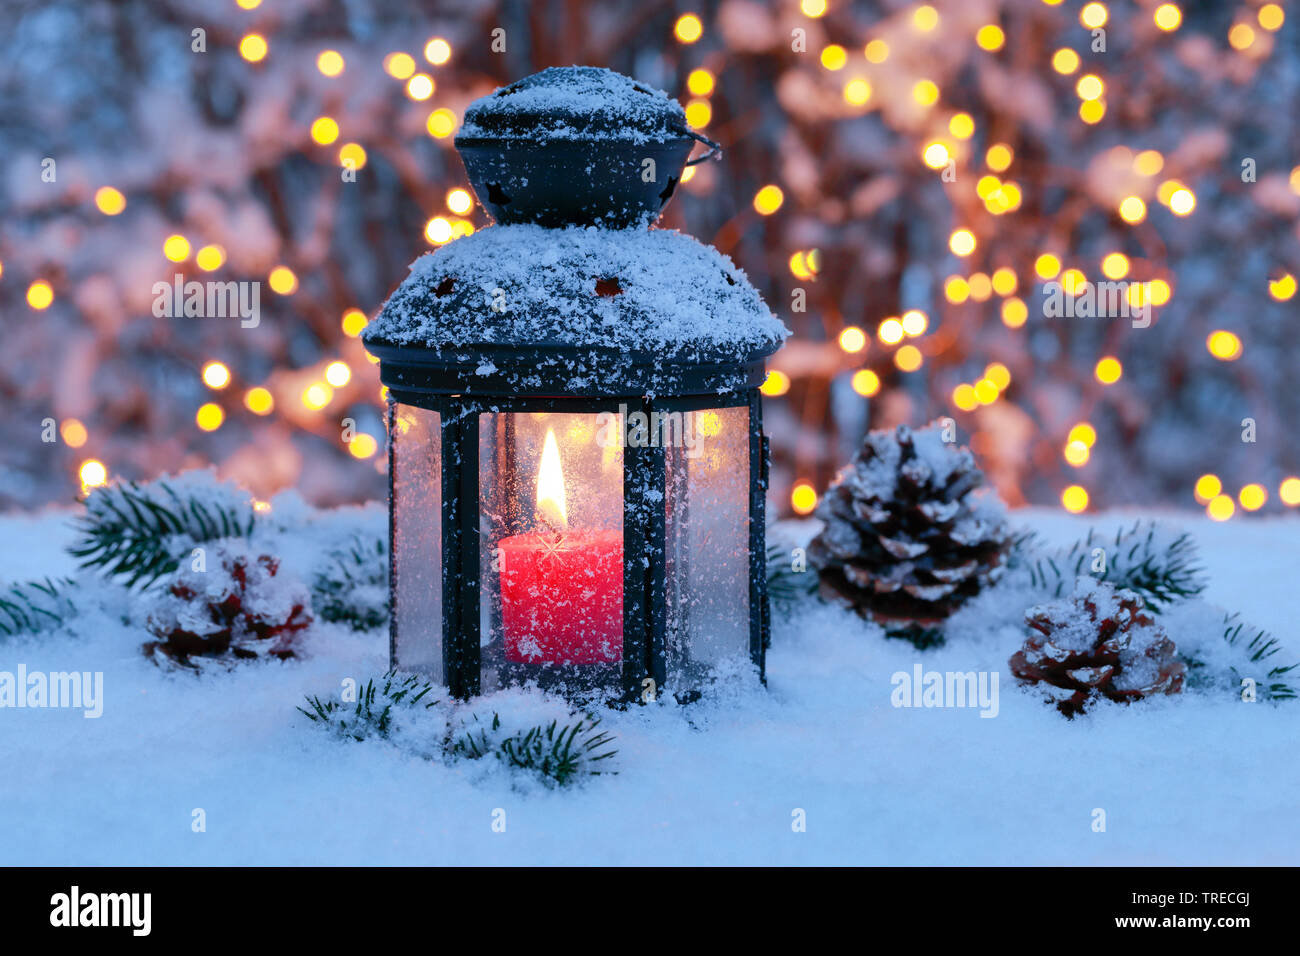 Lanterne avec illumination de Noël à l'extérieur, la Suisse Photo Stock -  Alamy